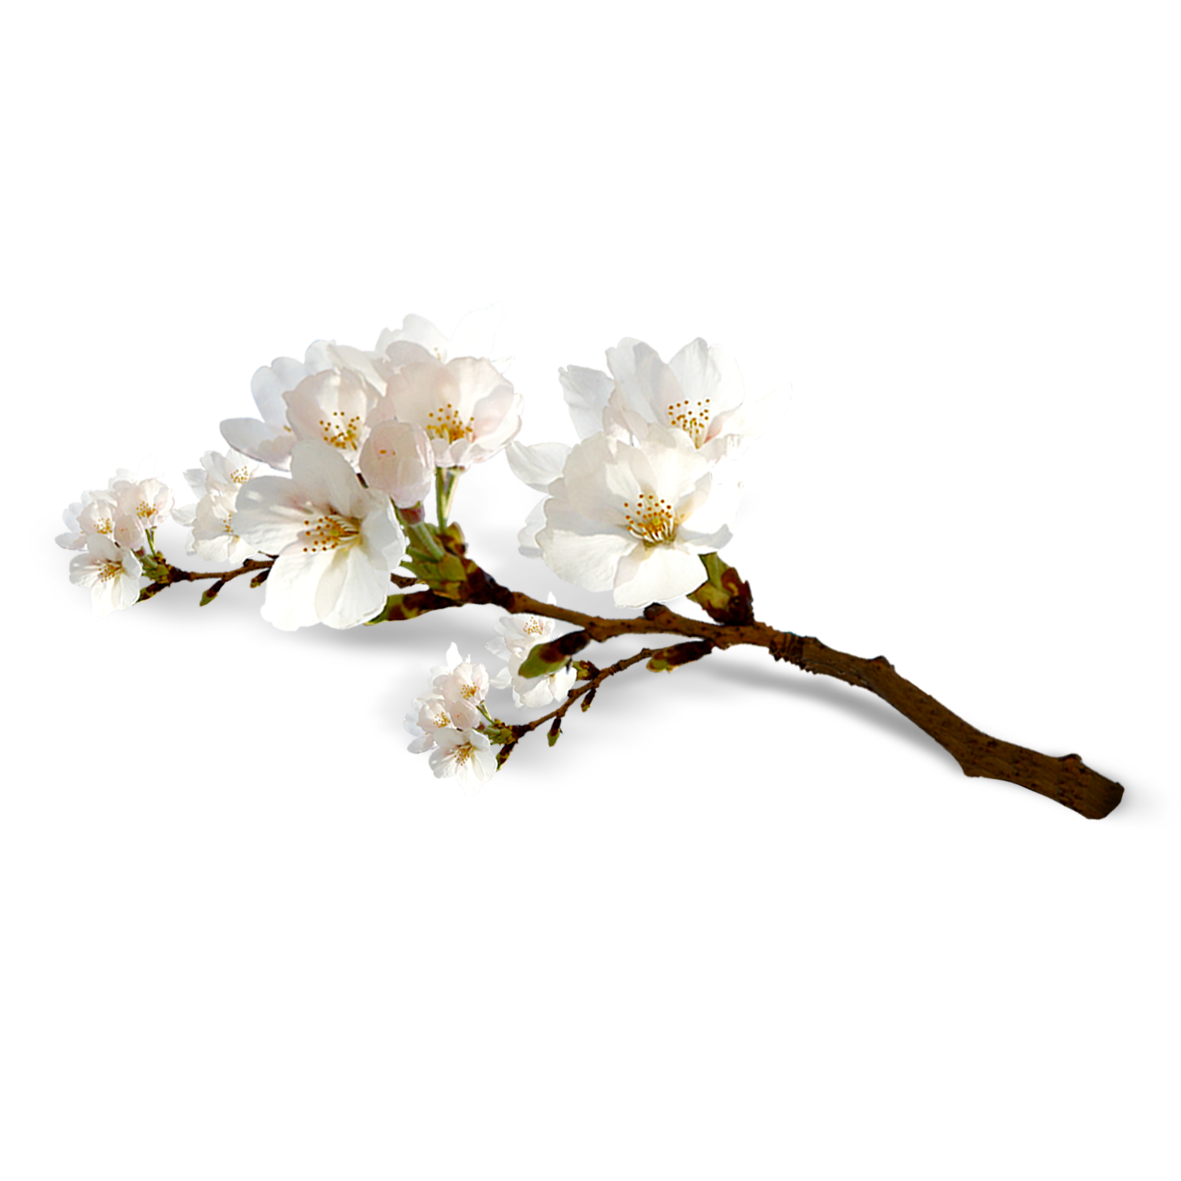 Hình ảnh cành hoa đào trắng